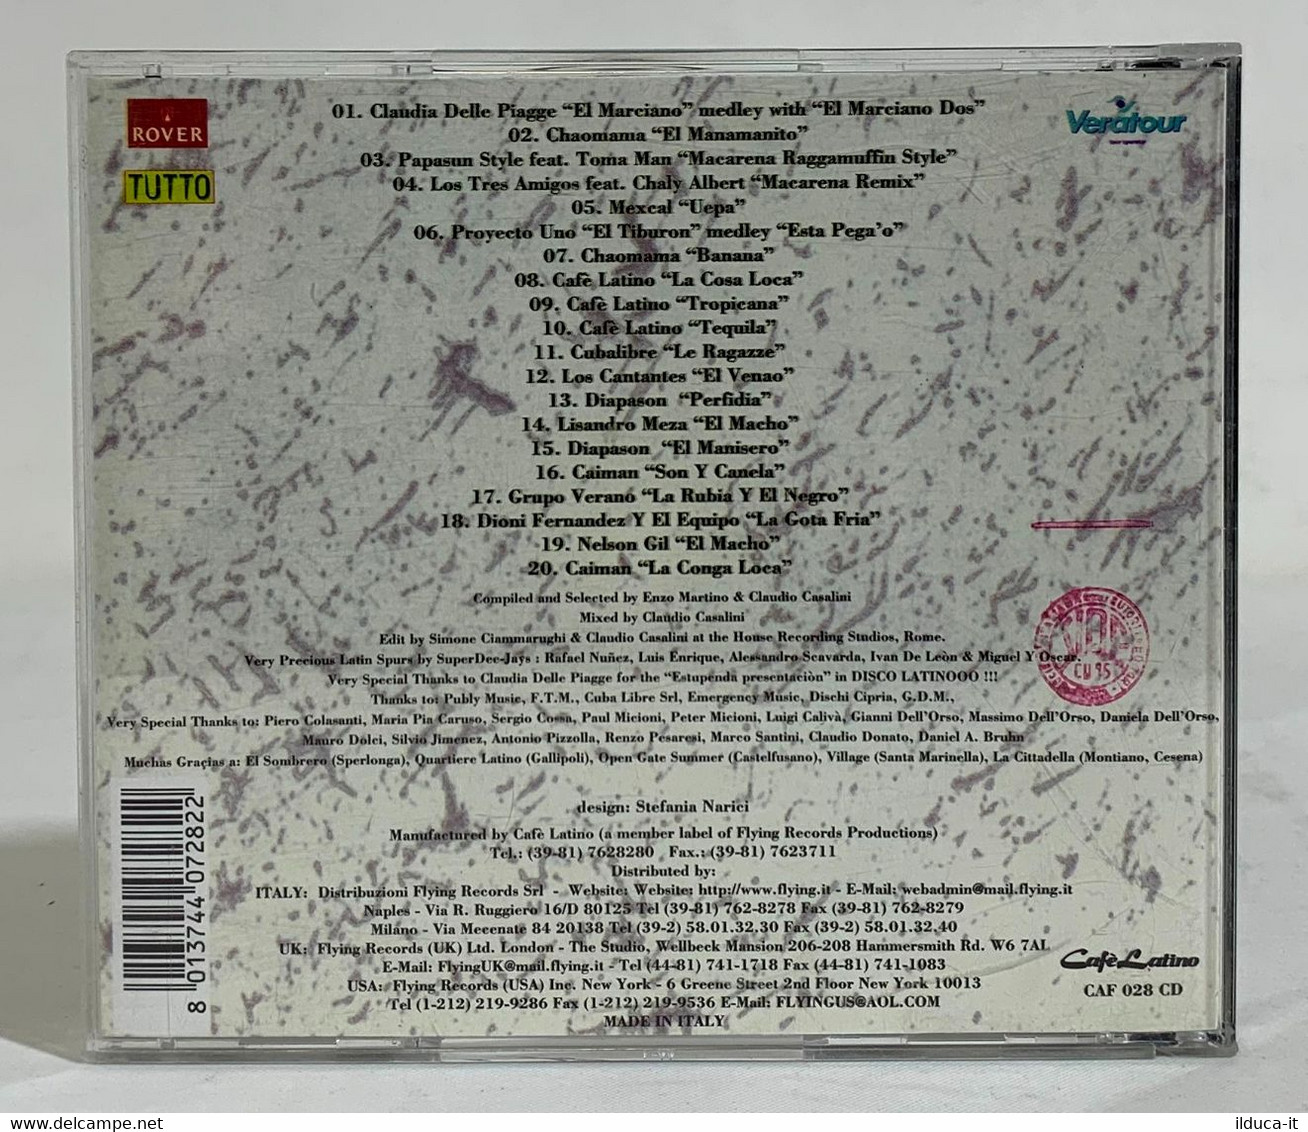 I102388 CD - Claudio Casalini - Disco Latino Dos - Tutto 1995 - Altri - Musica Spagnola